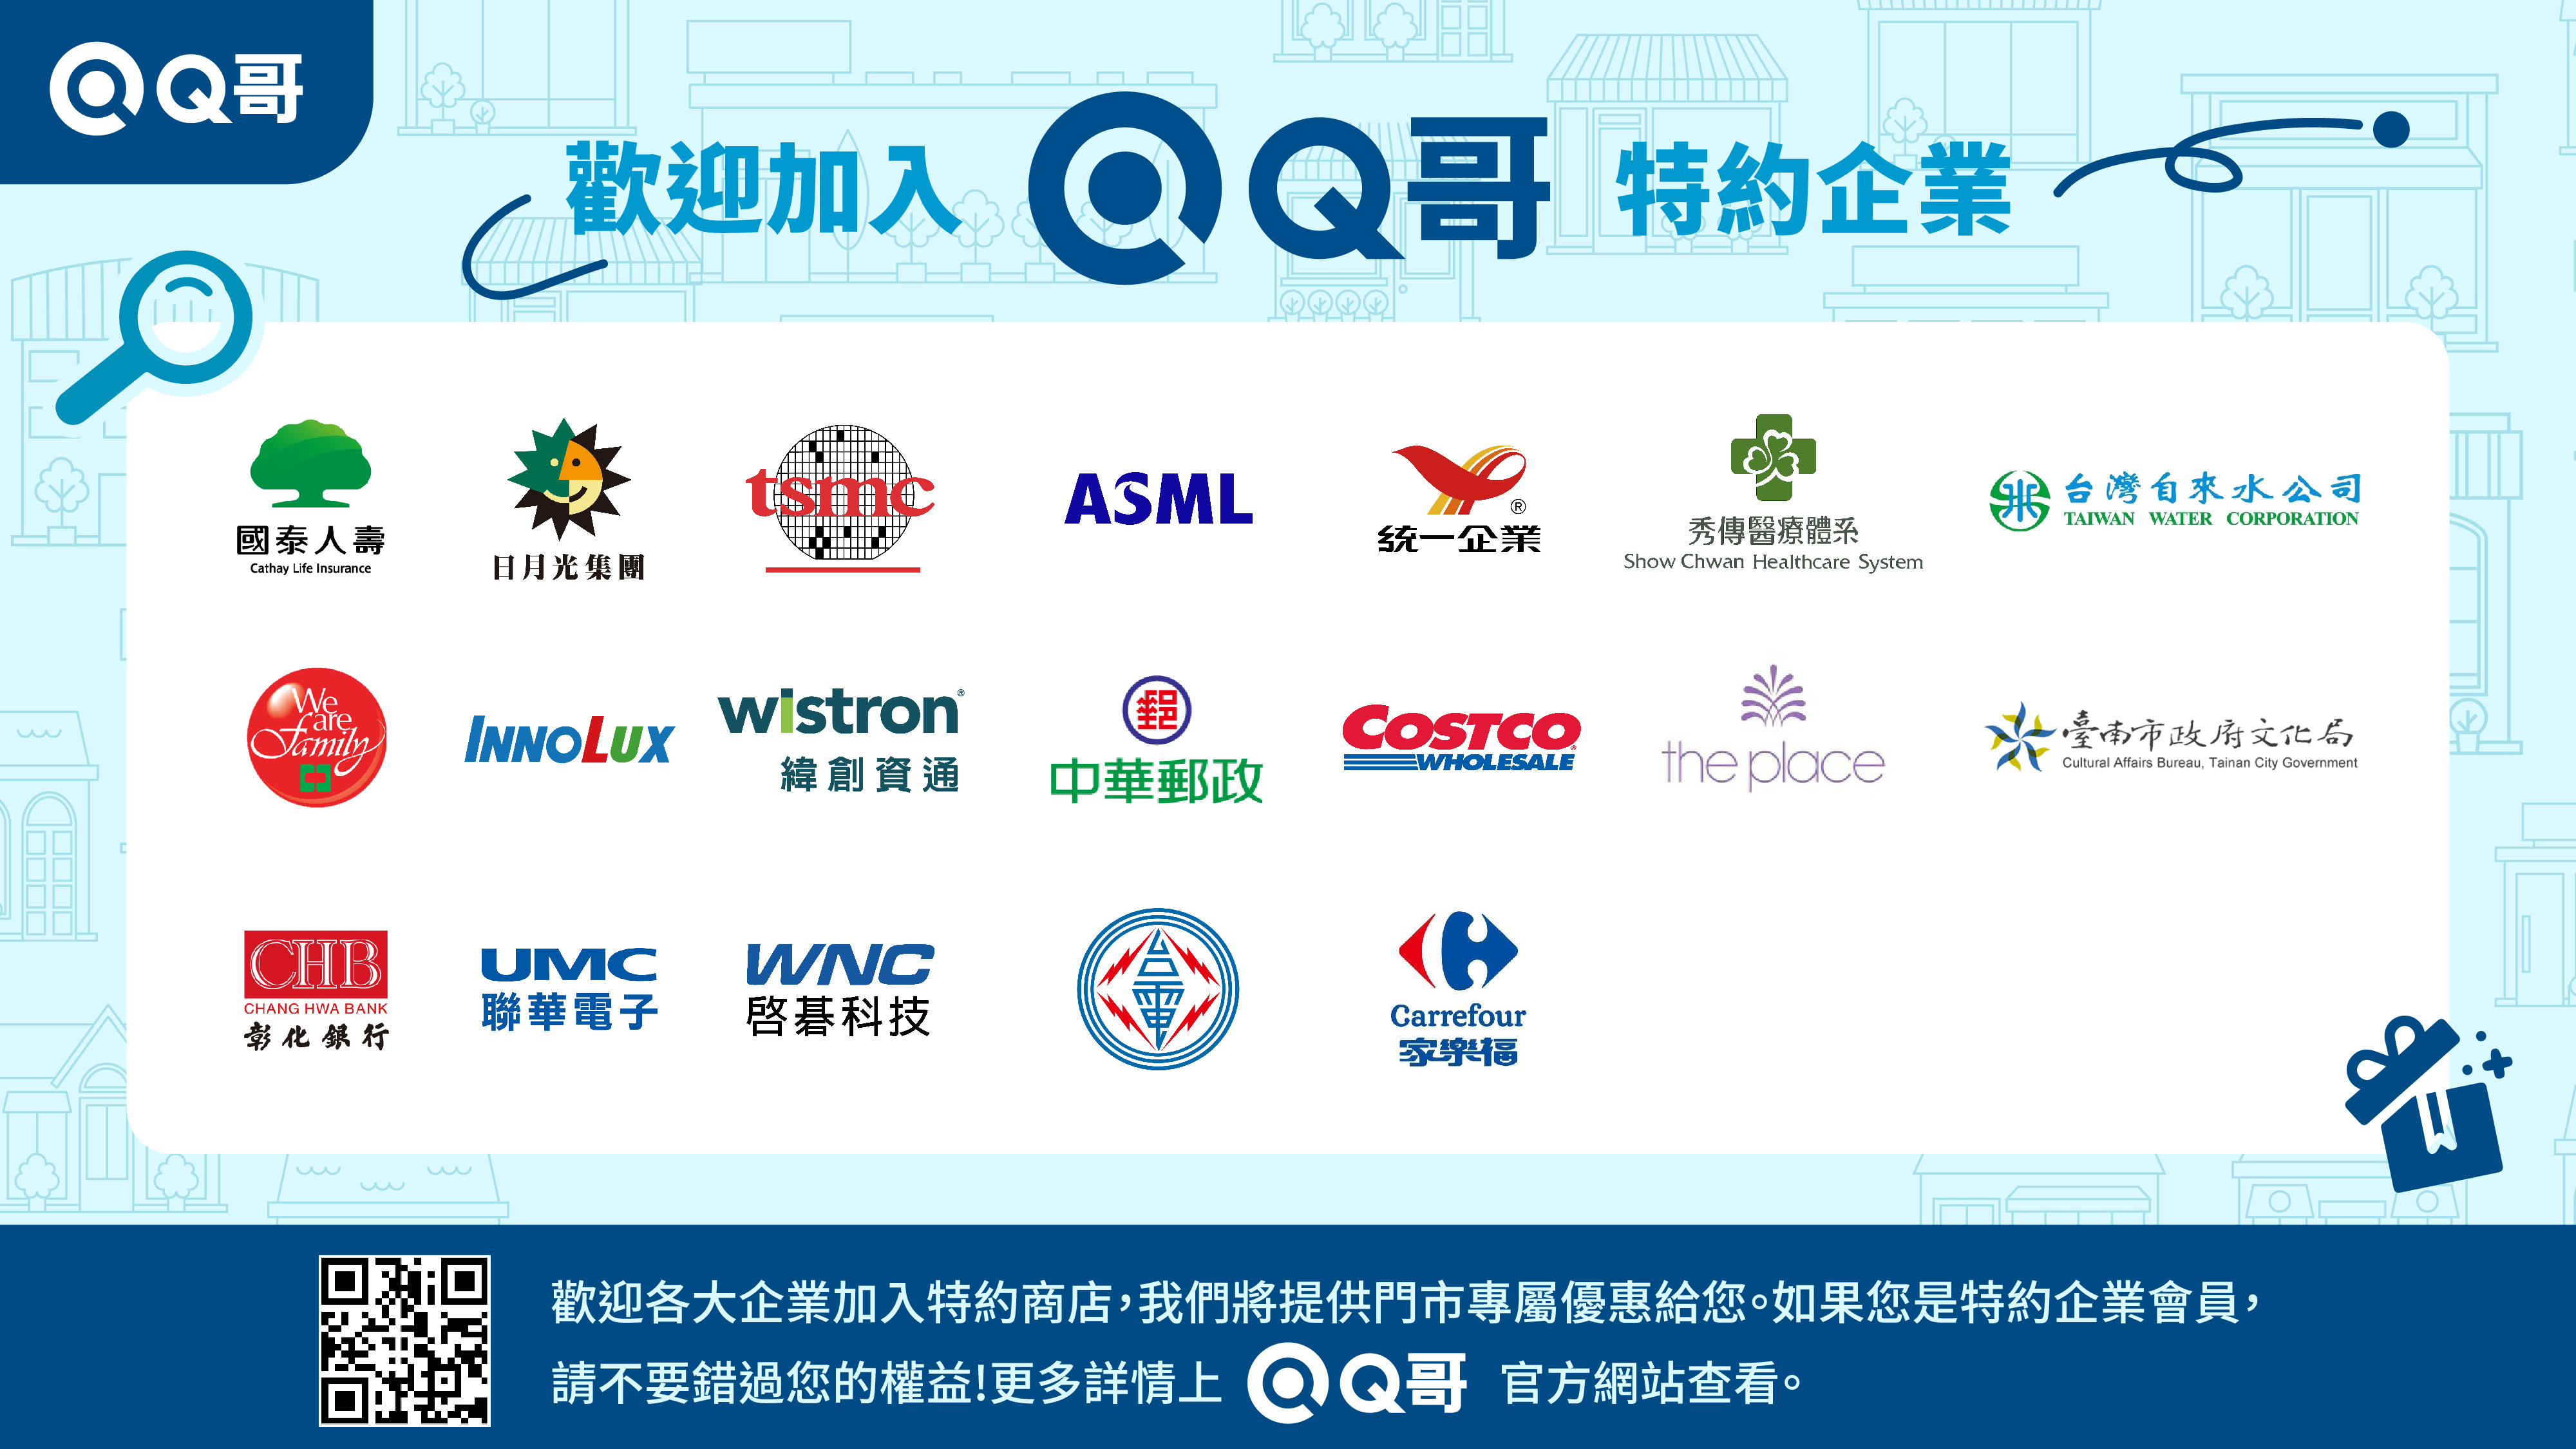 Q哥特約企業,合作企業,企業合作夥伴